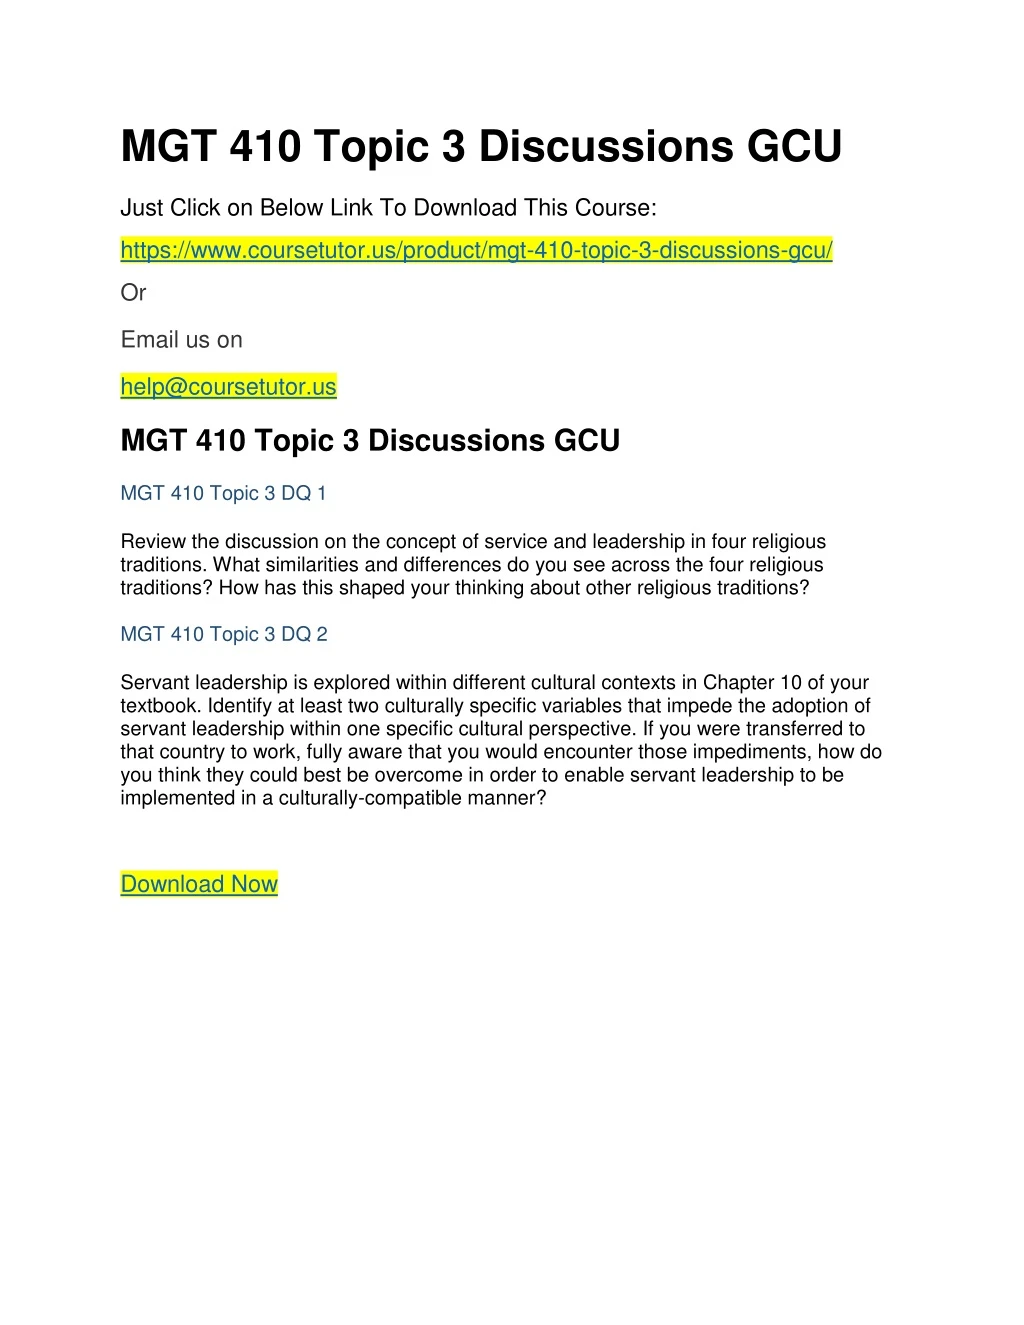 mgt 410 topic 3 discussions gcu